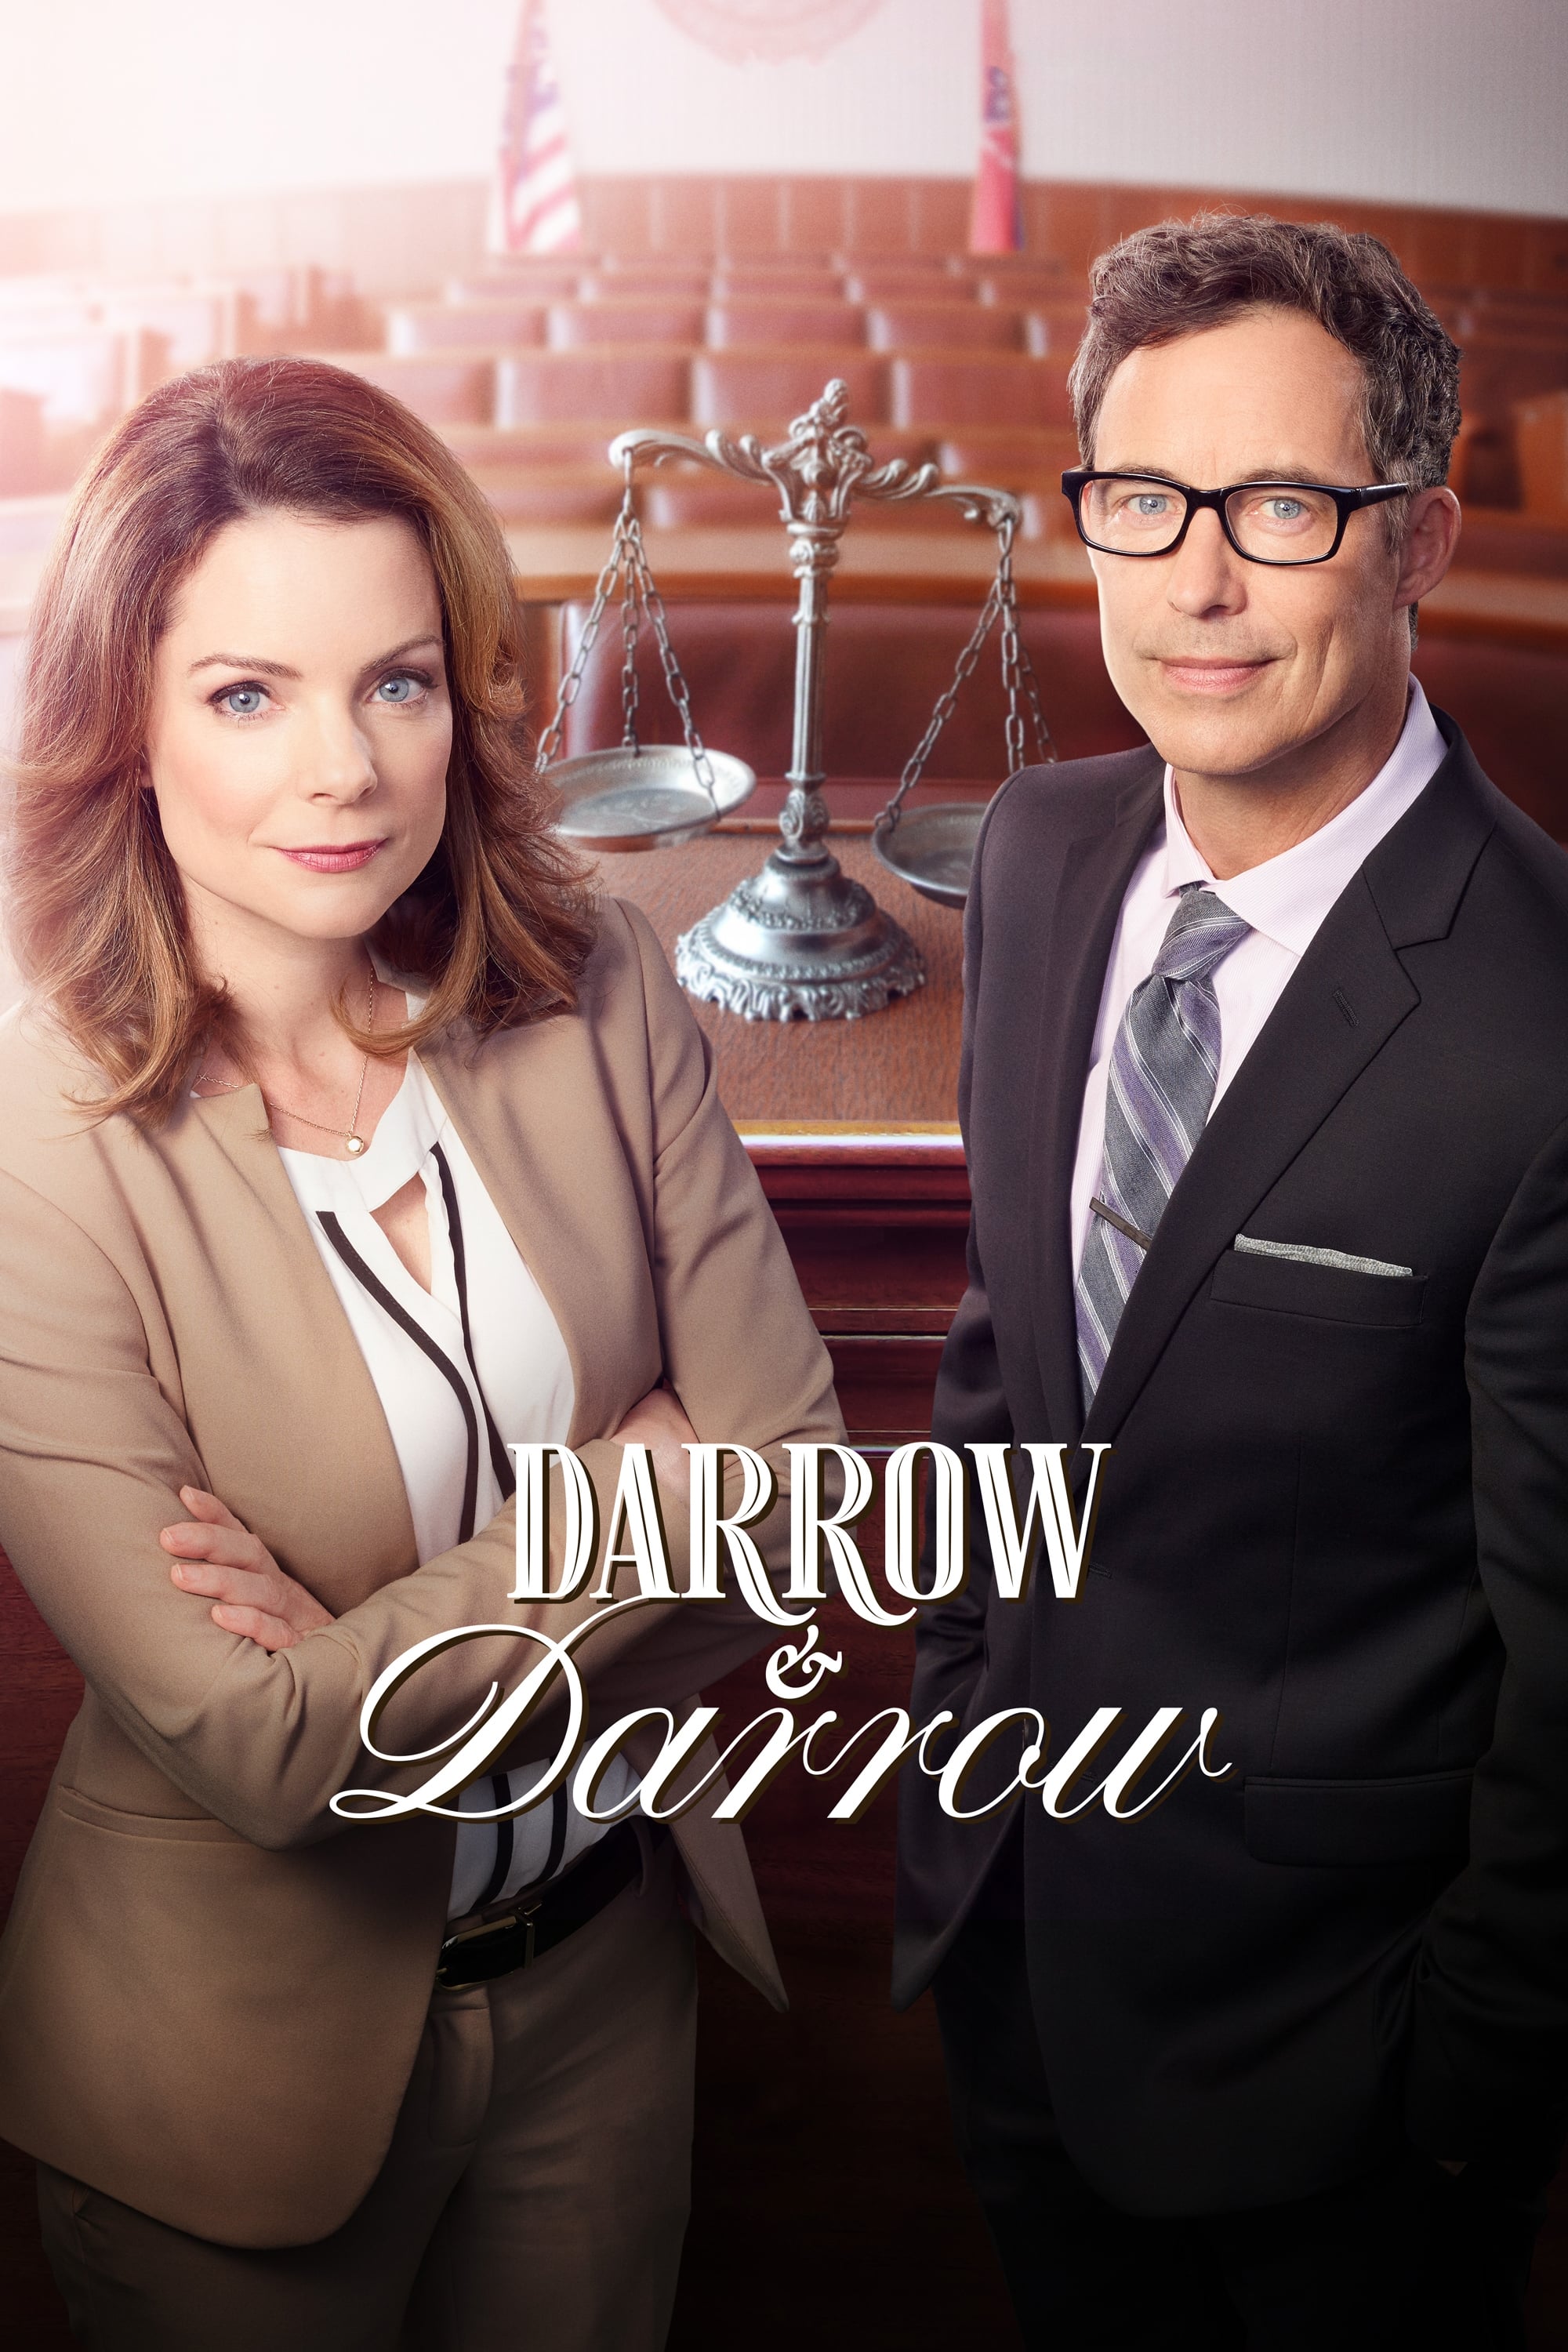 Caratula de Darrow & Darrow (Darrow & Darrow) 